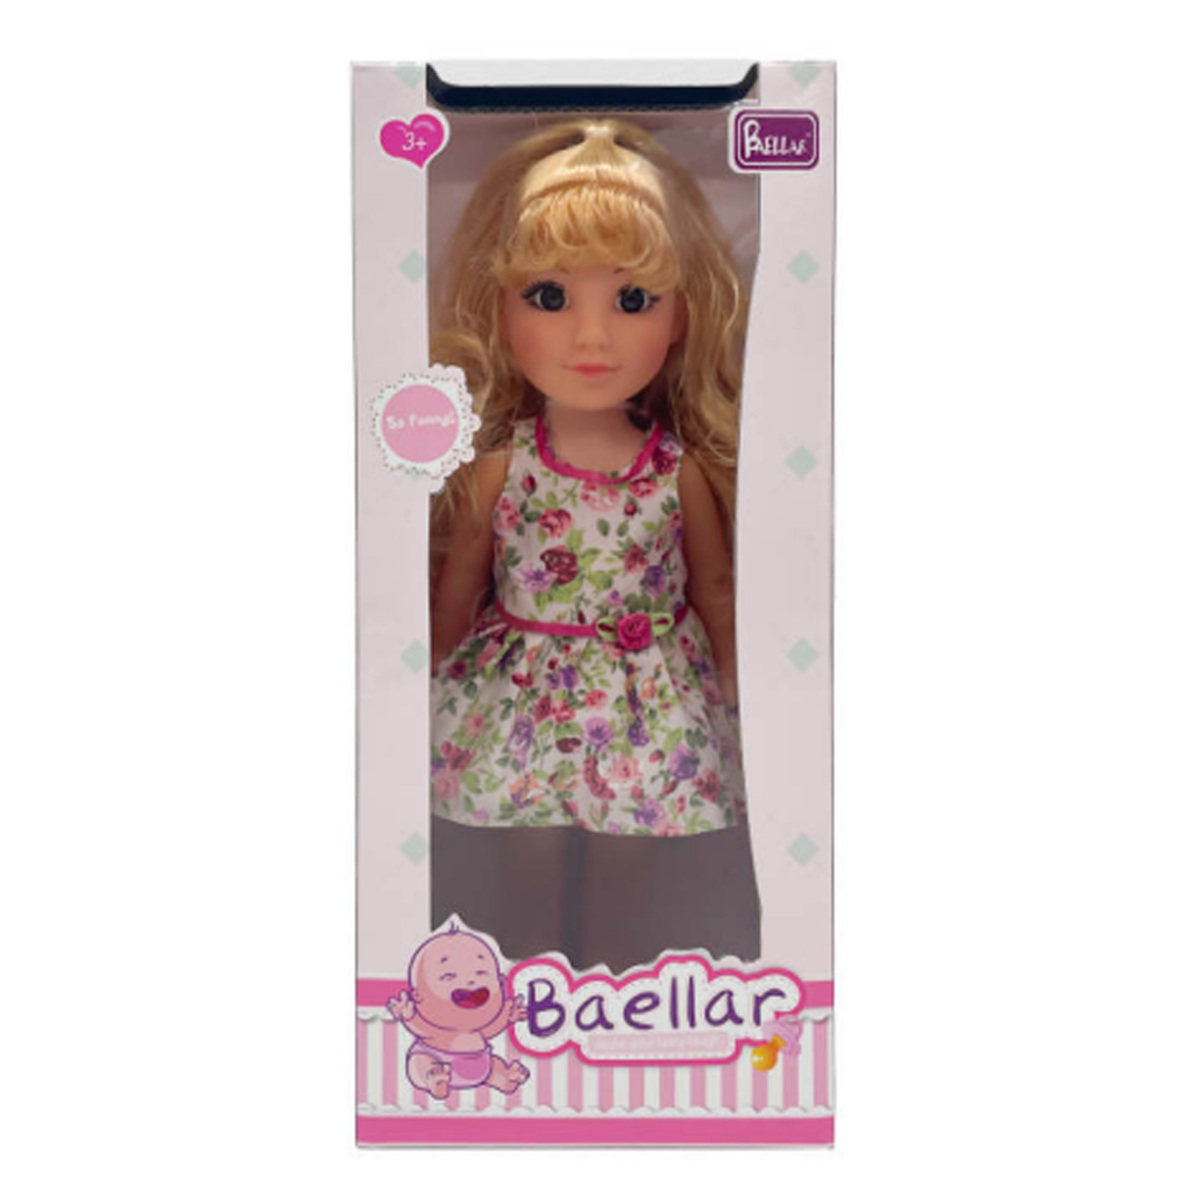 Fabiola Cute Girl Fash Doll 12In 31799